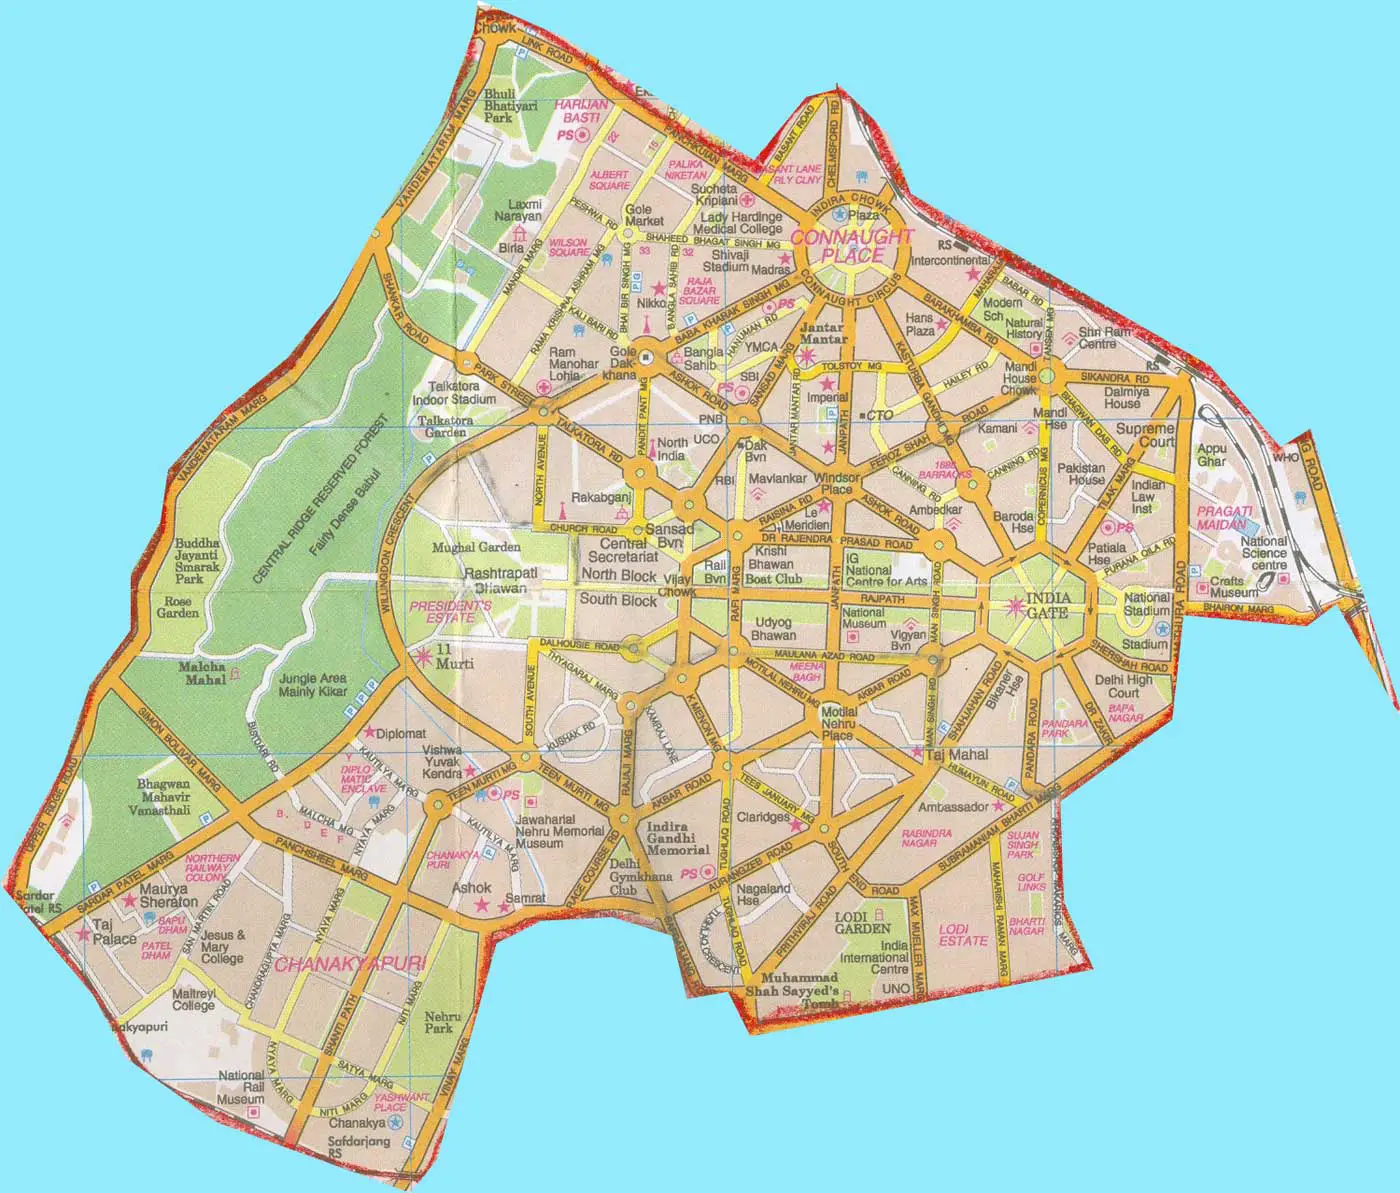 Map of New Delhi